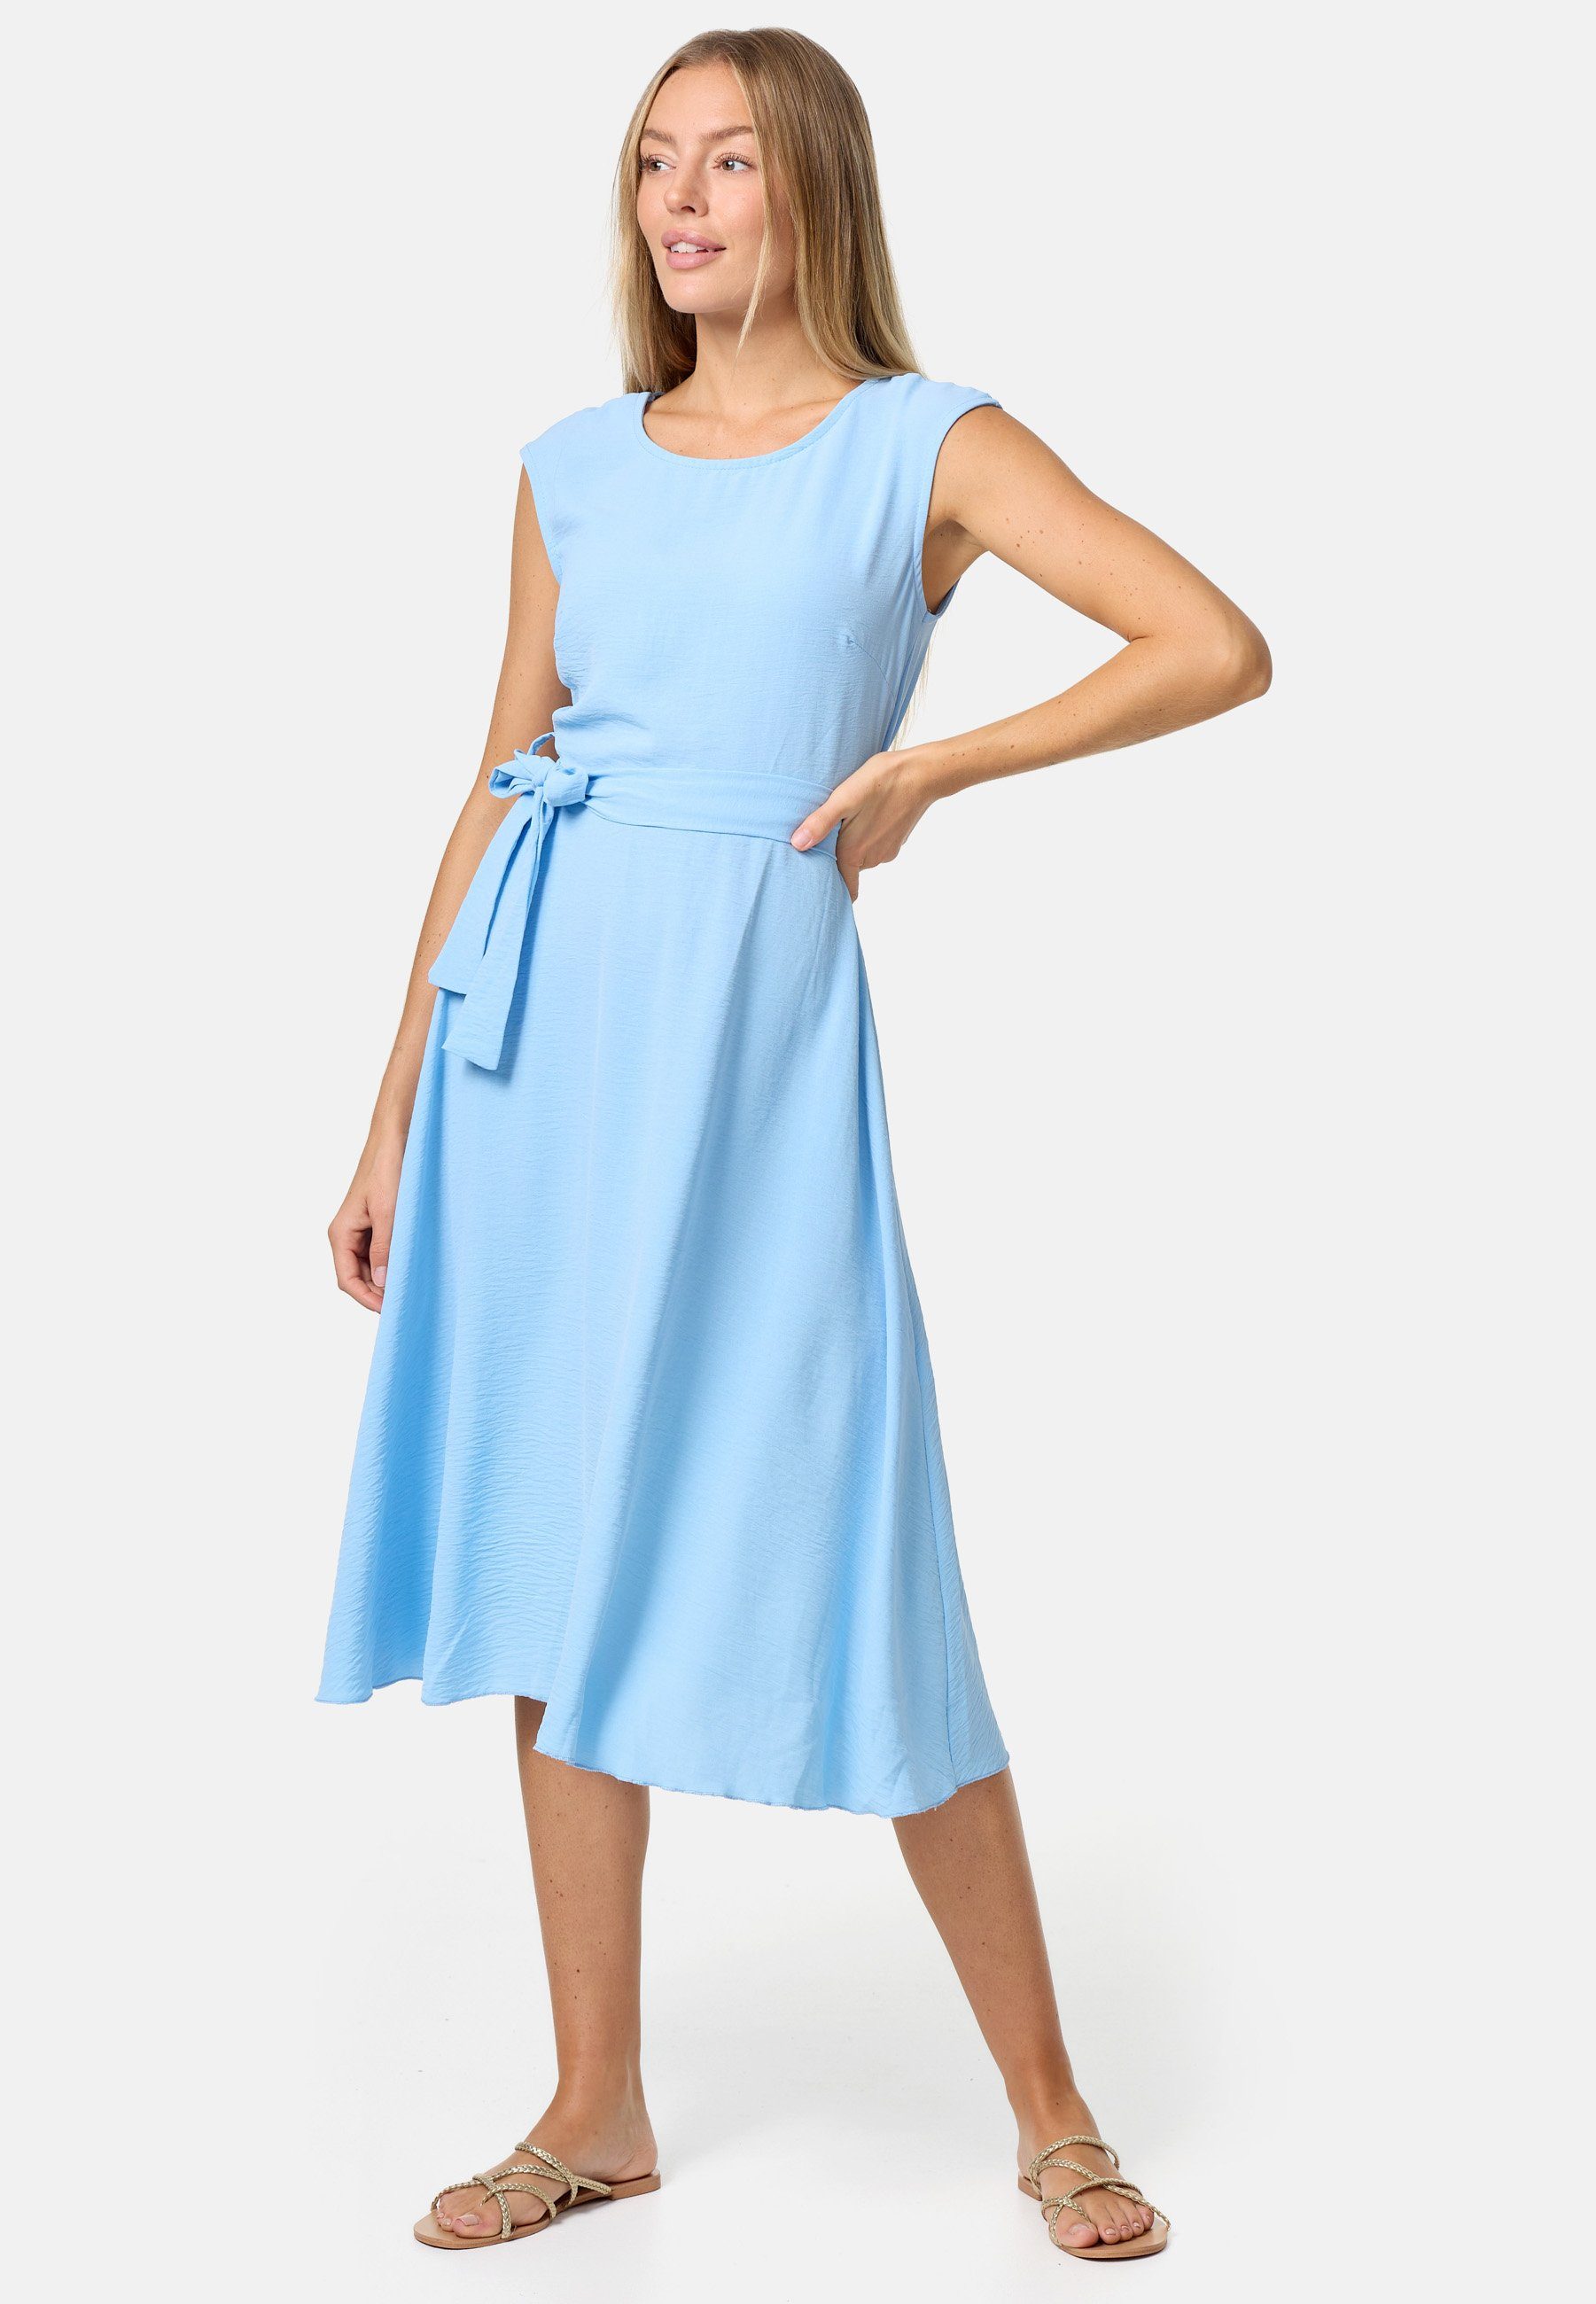 PM SELECTED Midikleid PM-26 (Ärmelloses Sommerkleid Dress mit Bindeband in Einheitsgröße) Blau | Kleider